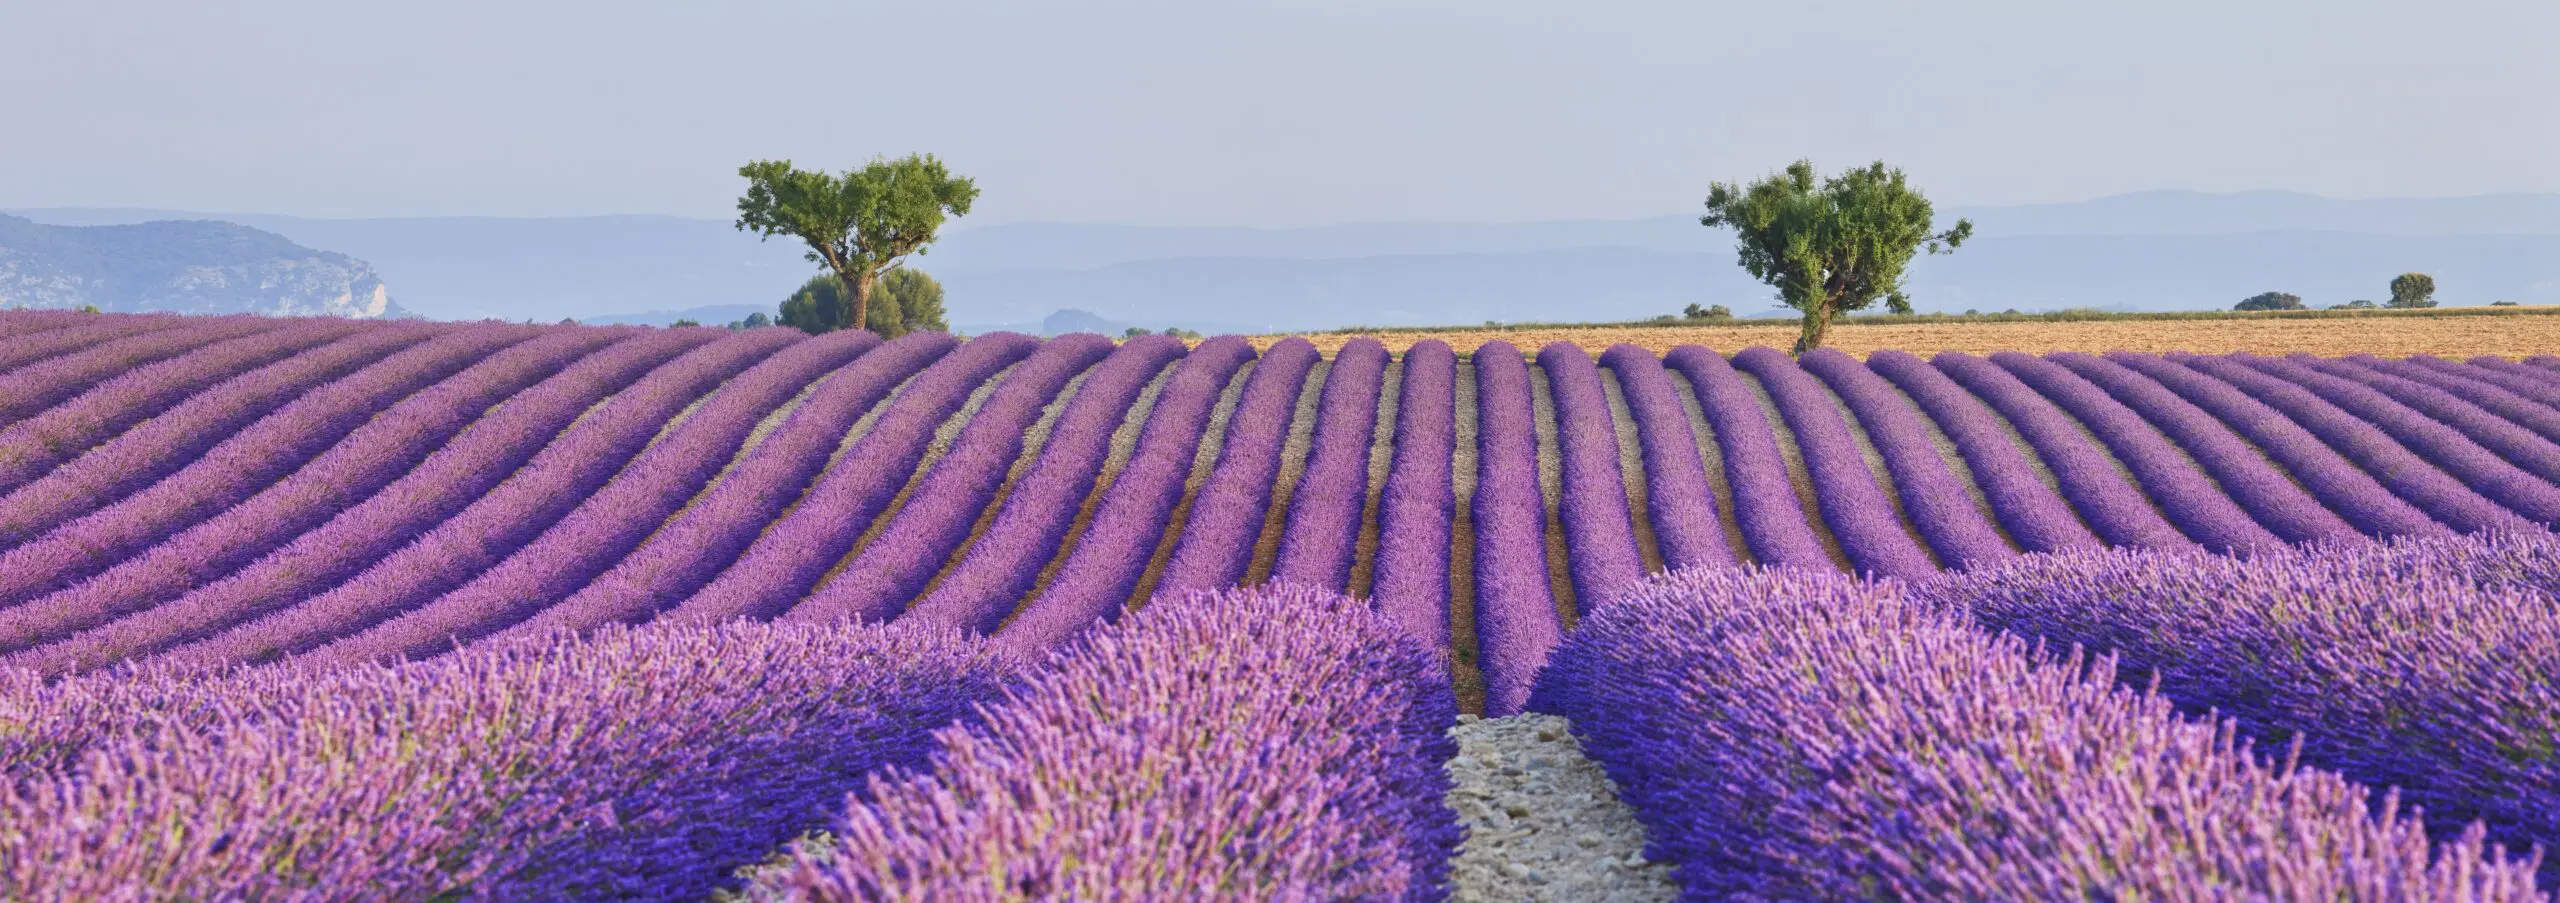 Wandbild (4602) Vaccarella Luigi – Lavender fields präsentiert: Natur,Landschaften,Blumen und Blüten,Sonstige Pflanzen,Sommer,Wege,Frühling